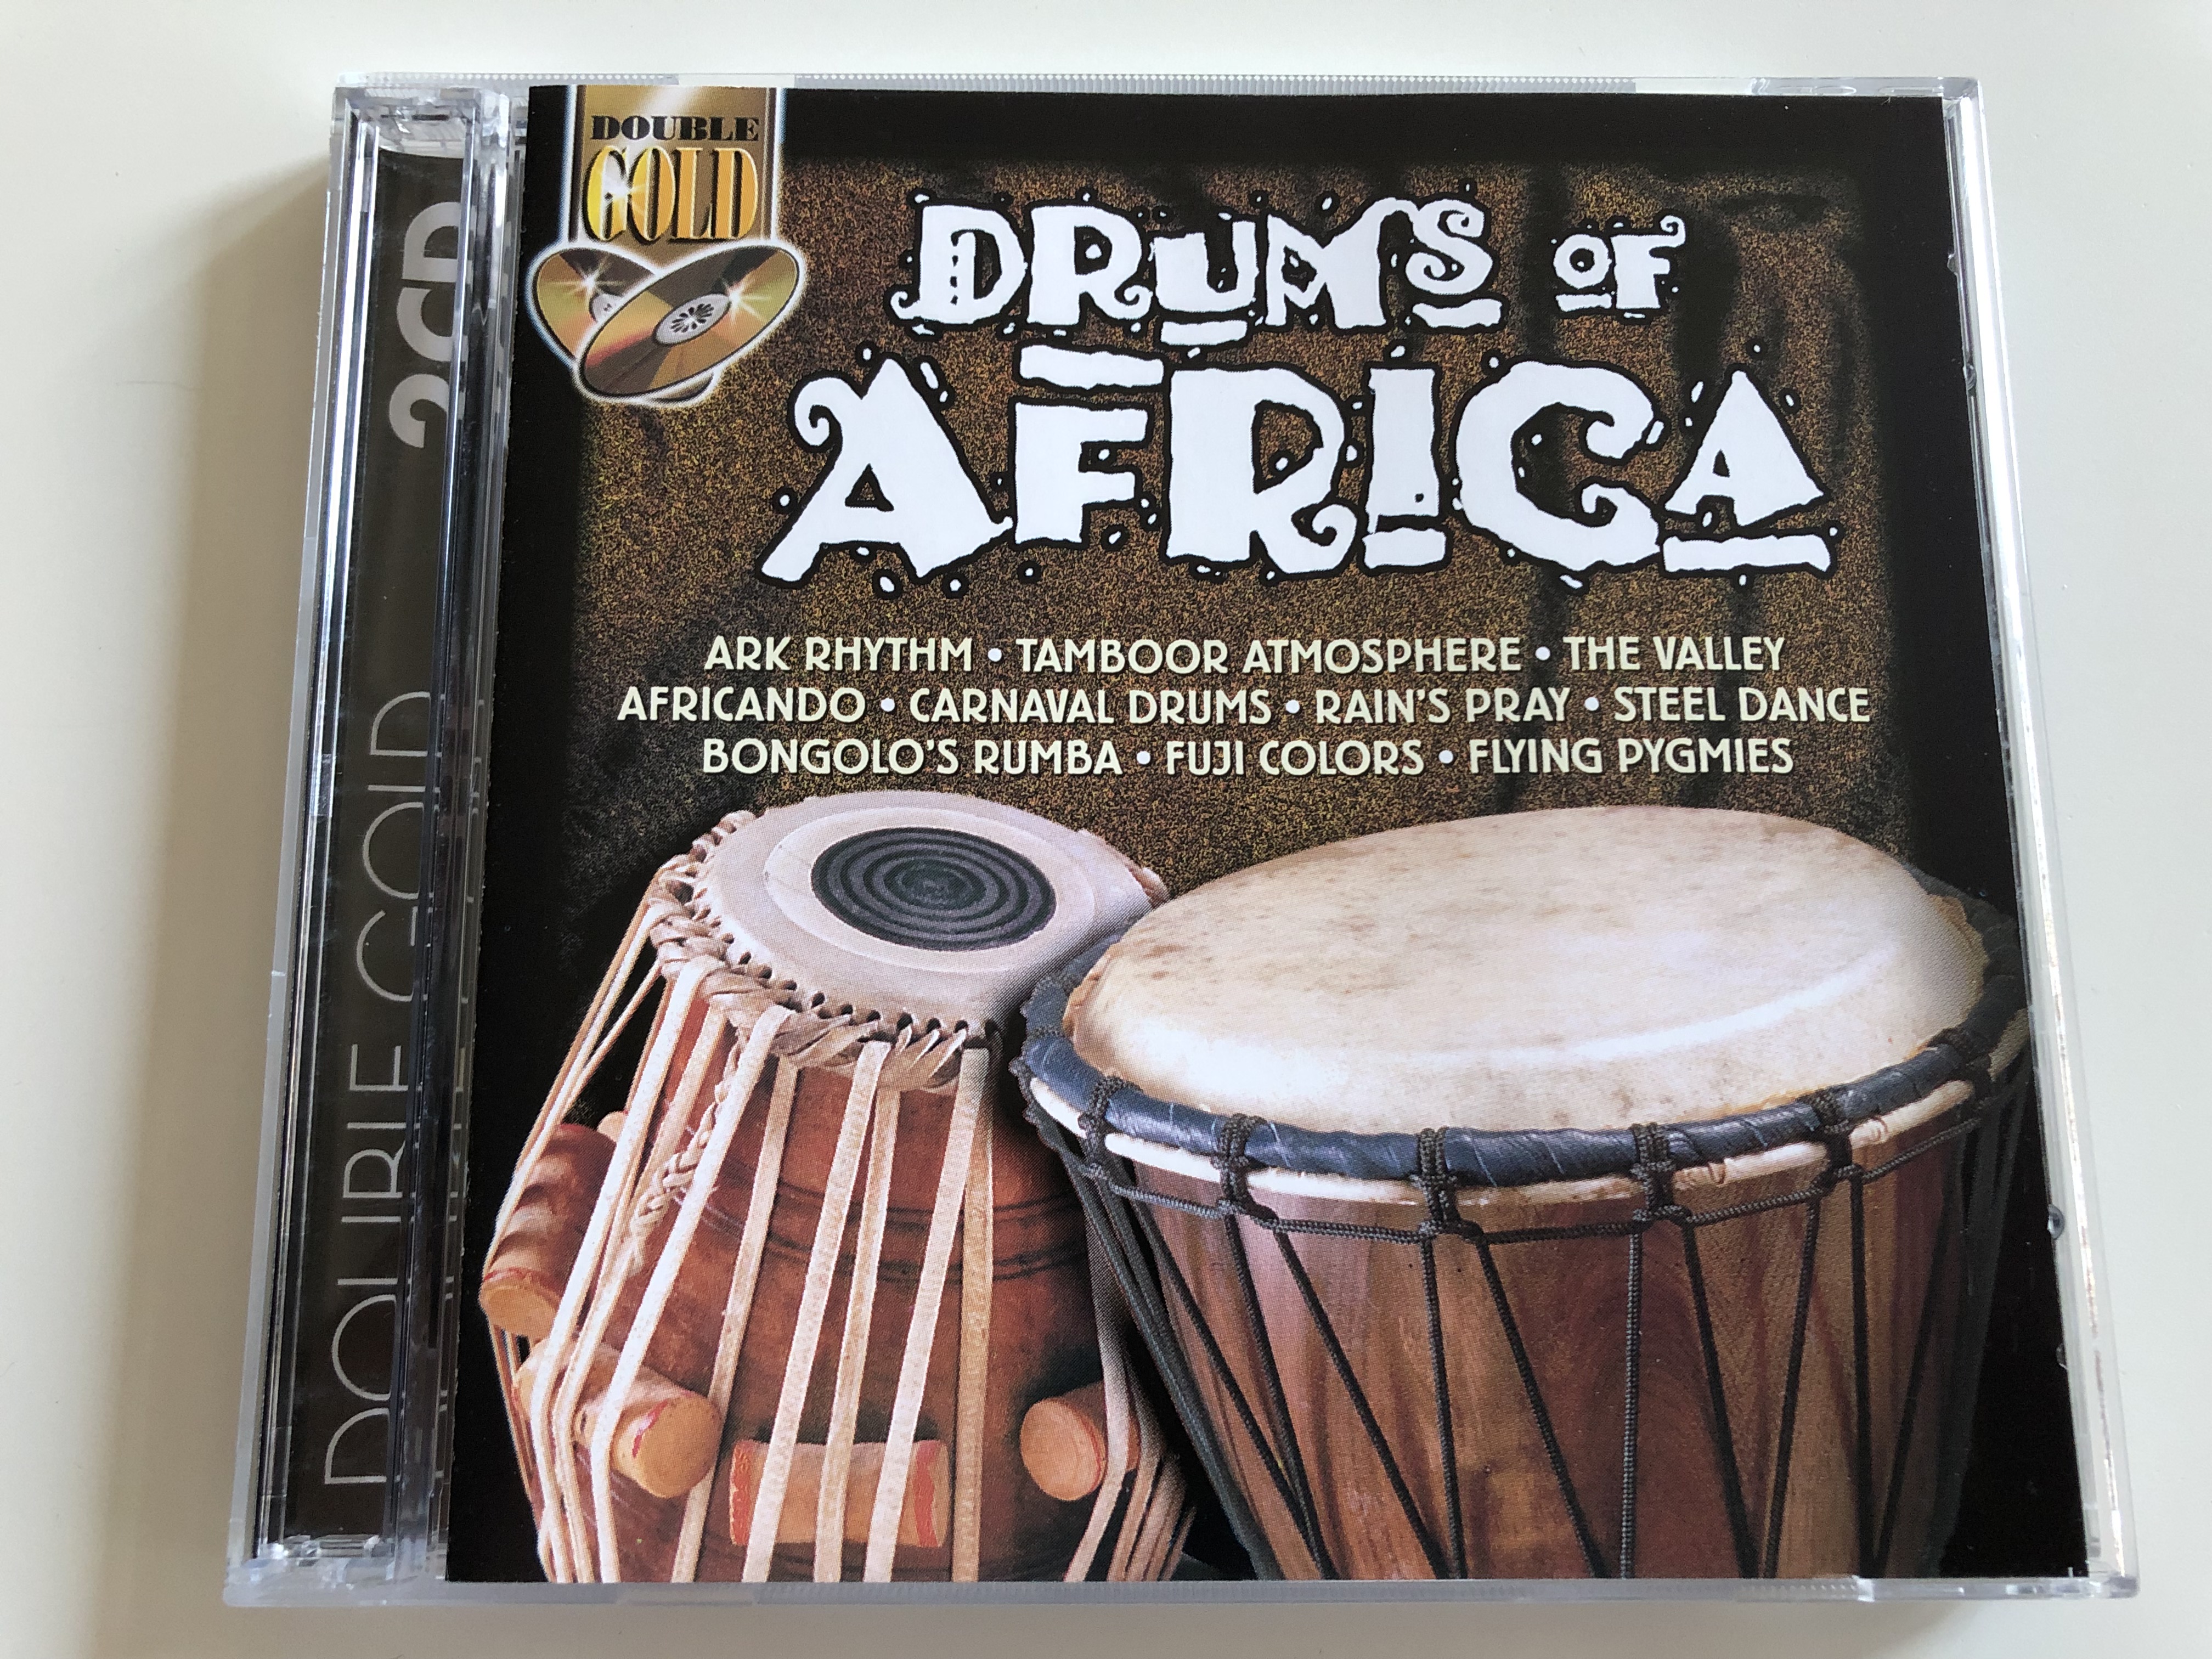 drums-of-africa-ark-rhythm-tamboor-atmosphere-the-valley-africando-carnaval-drums-rain-s-pray-steel-dance-bongolo-s-rumba-fuji-colors-flying-pygmies-lmm-2x-audio-cd-1702032-1-.jpg